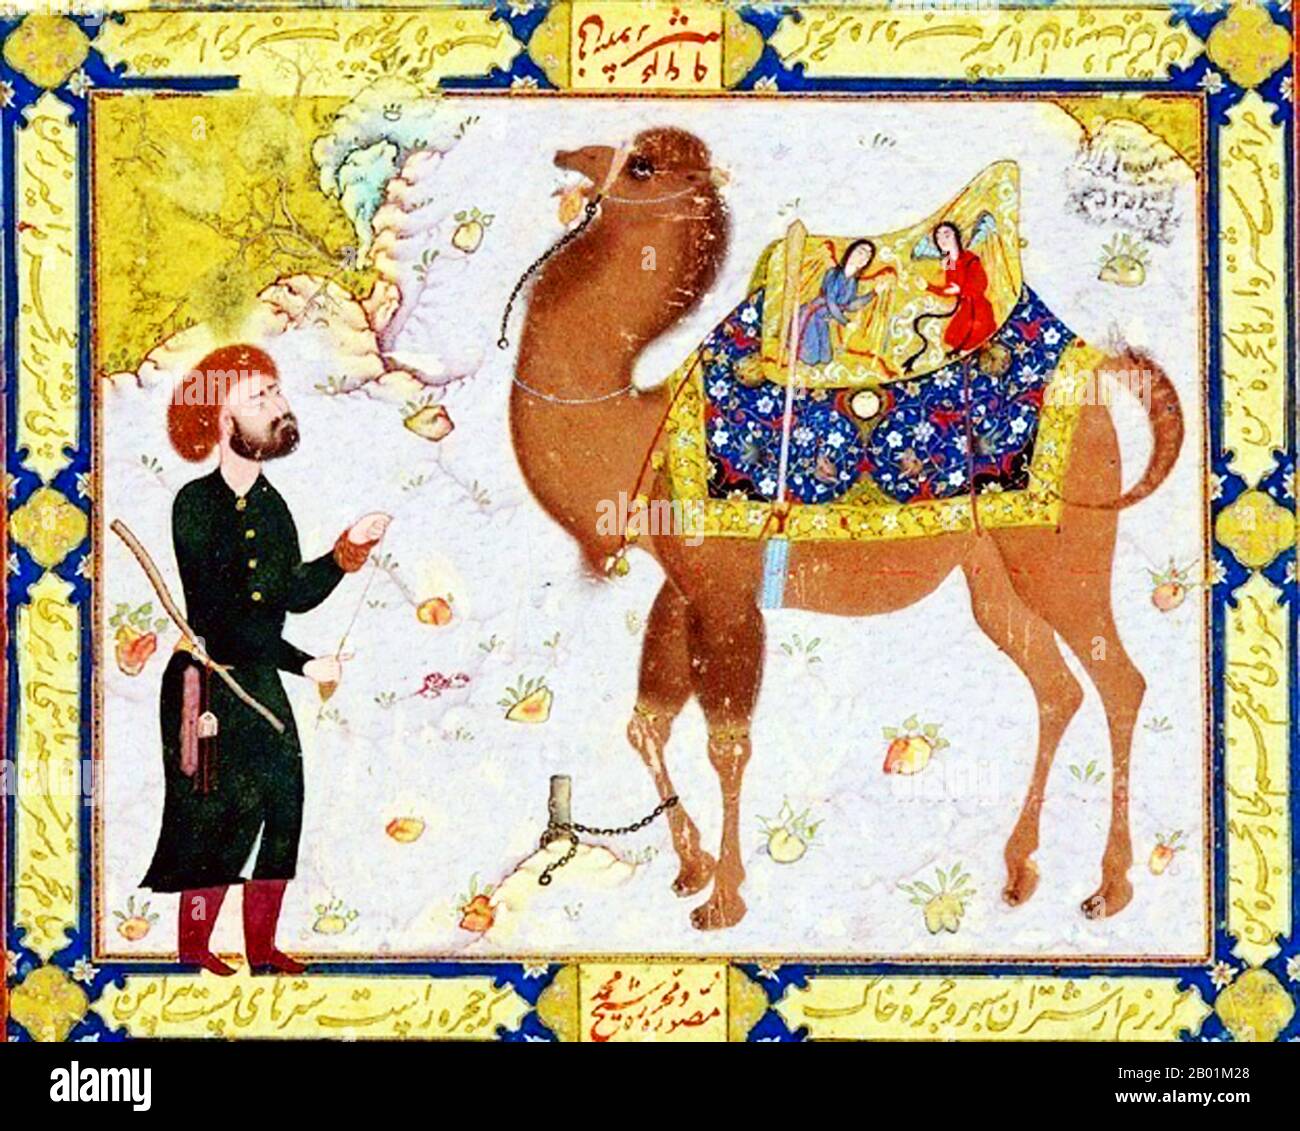 Iran/Perse : chameau et gardien. Aquarelle de Shaykh Muhammad (fl. 16e siècle), c. 1556-1557. Une miniature persane est une petite peinture sur papier, qu'il s'agisse d'une illustration de livre ou d'une œuvre d'art séparée destinée à être conservée dans un album de ces œuvres appelé muraqqa. Les techniques sont largement comparables aux traditions occidentales et byzantines des miniatures dans les manuscrits enluminés. Bien qu'il existe une tradition persane tout aussi bien établie de peinture murale, le taux de survie et l'état de conservation des miniatures sont meilleurs. Banque D'Images